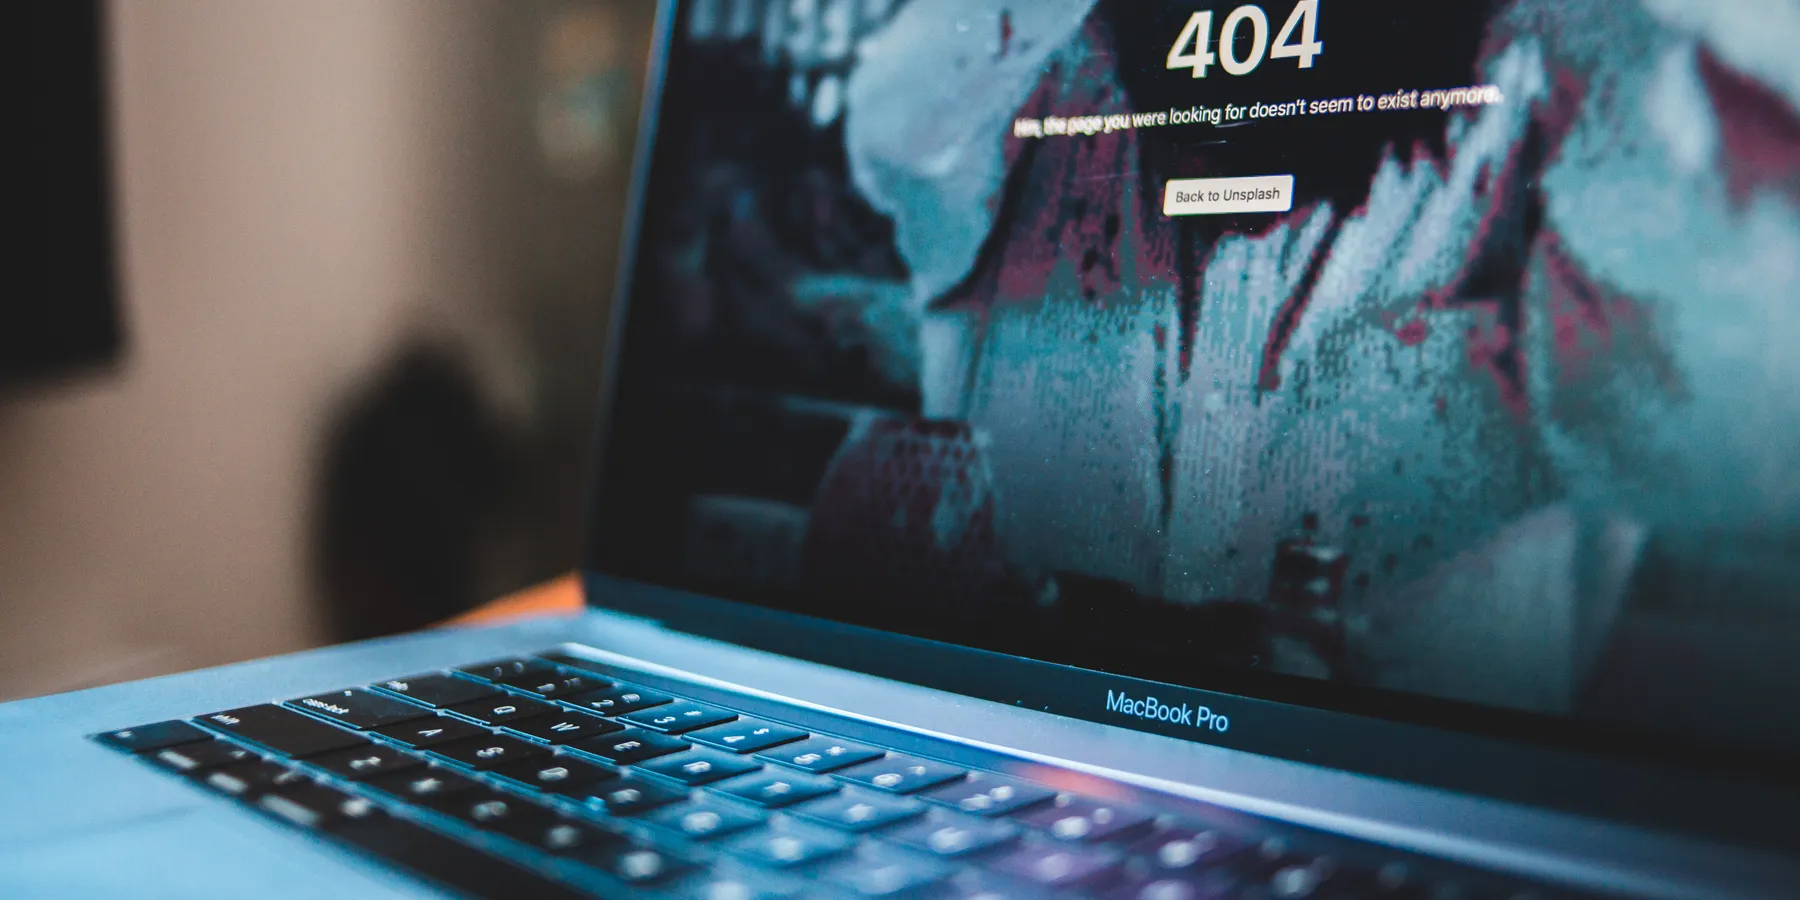 Laptop with 404 error